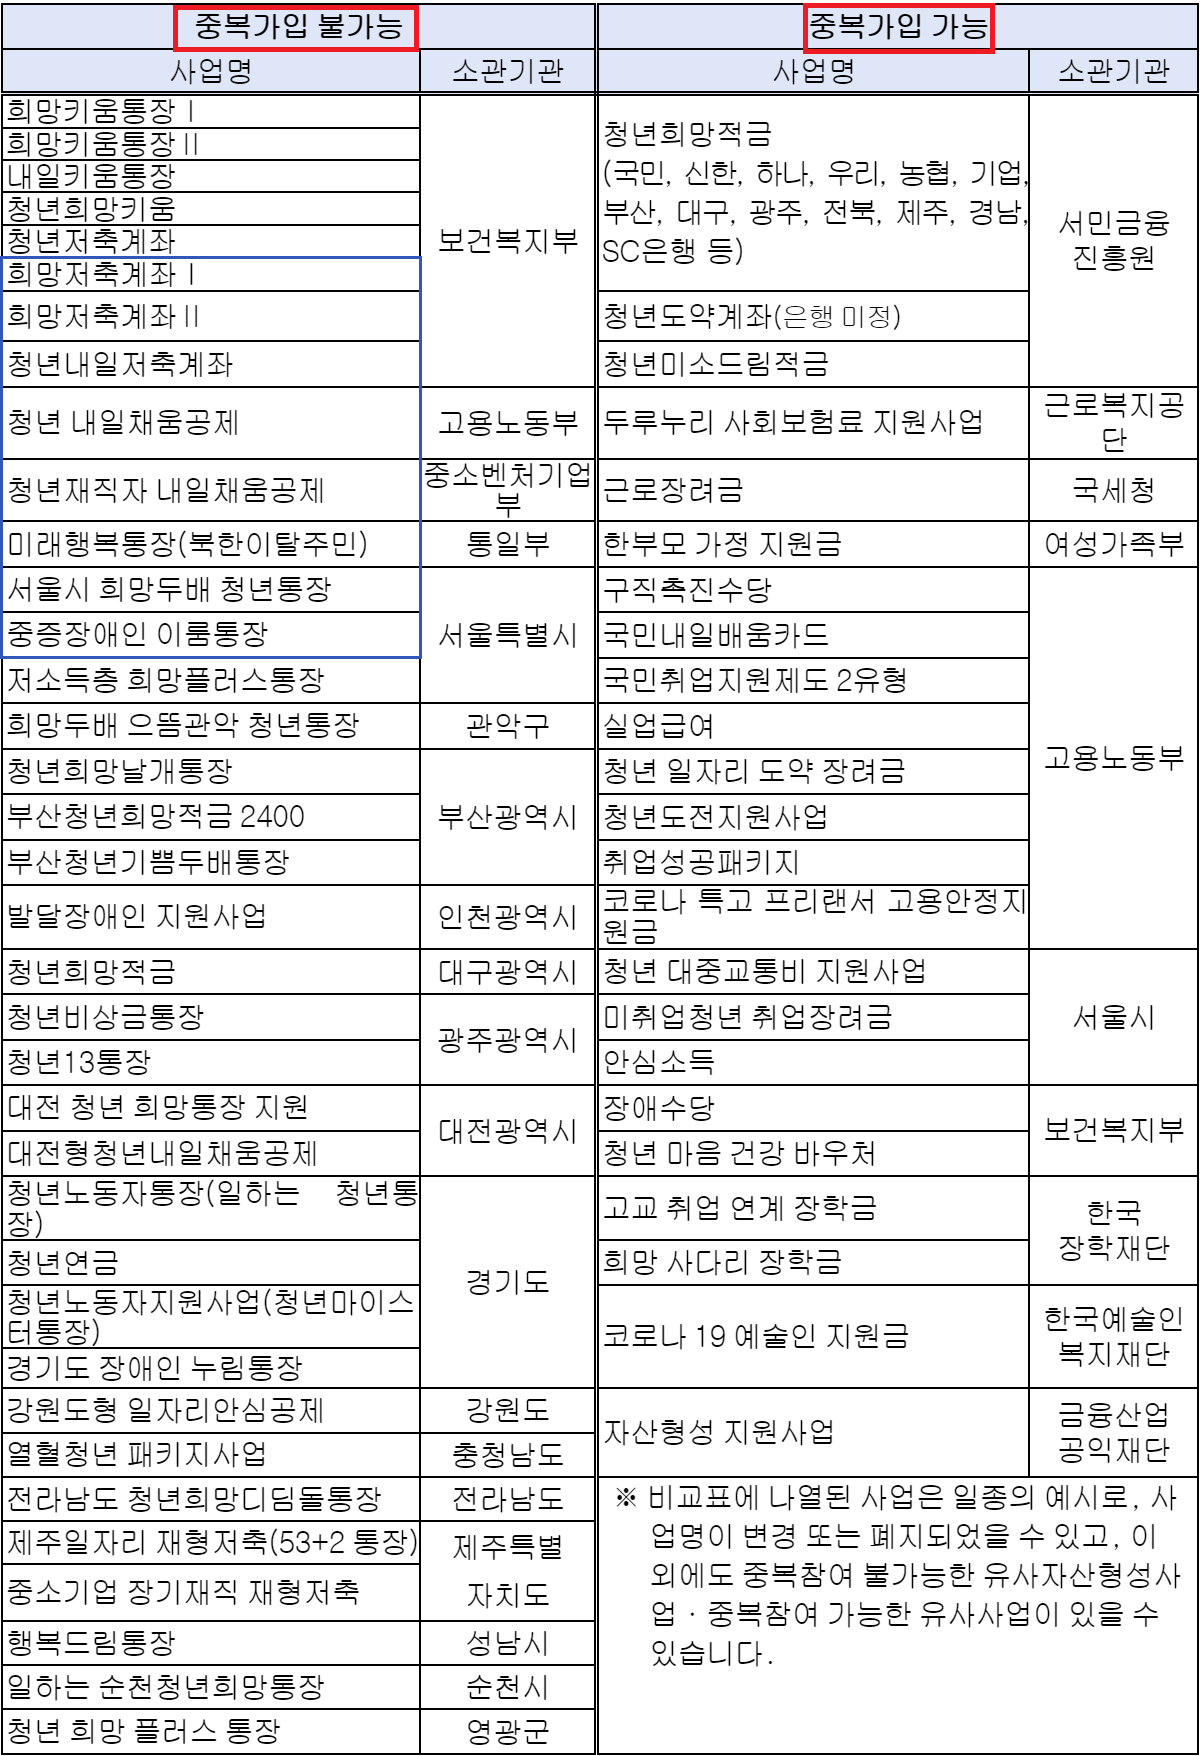 희망두배 청년통장 유사사업 목록